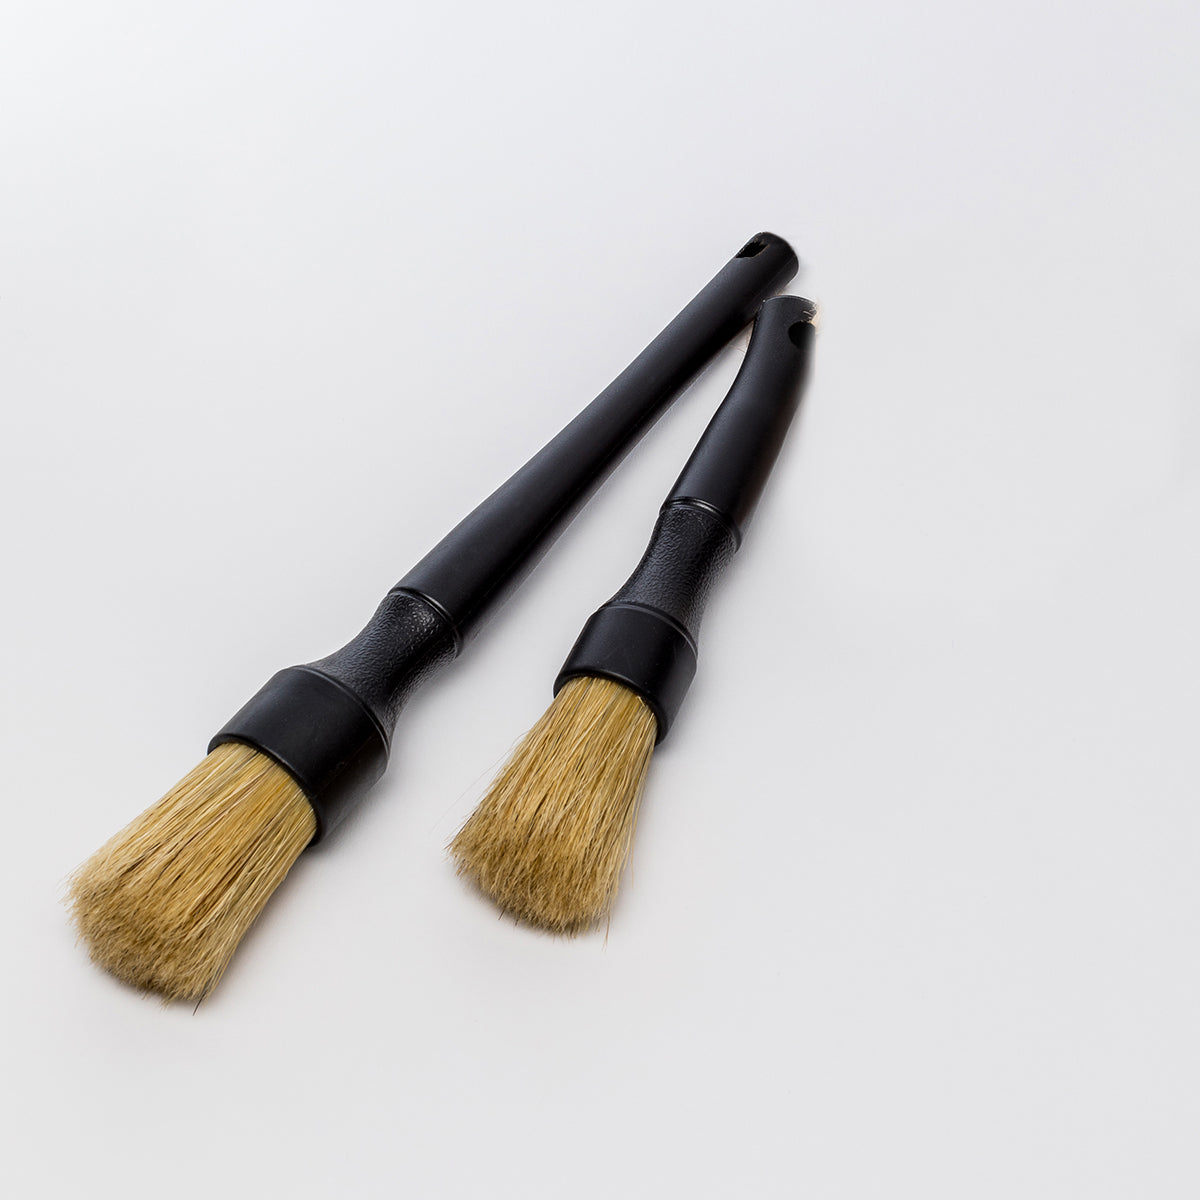 Hog Brush Kit - hog's hair detailing brushes x2 - natural bristles HS 9603909100